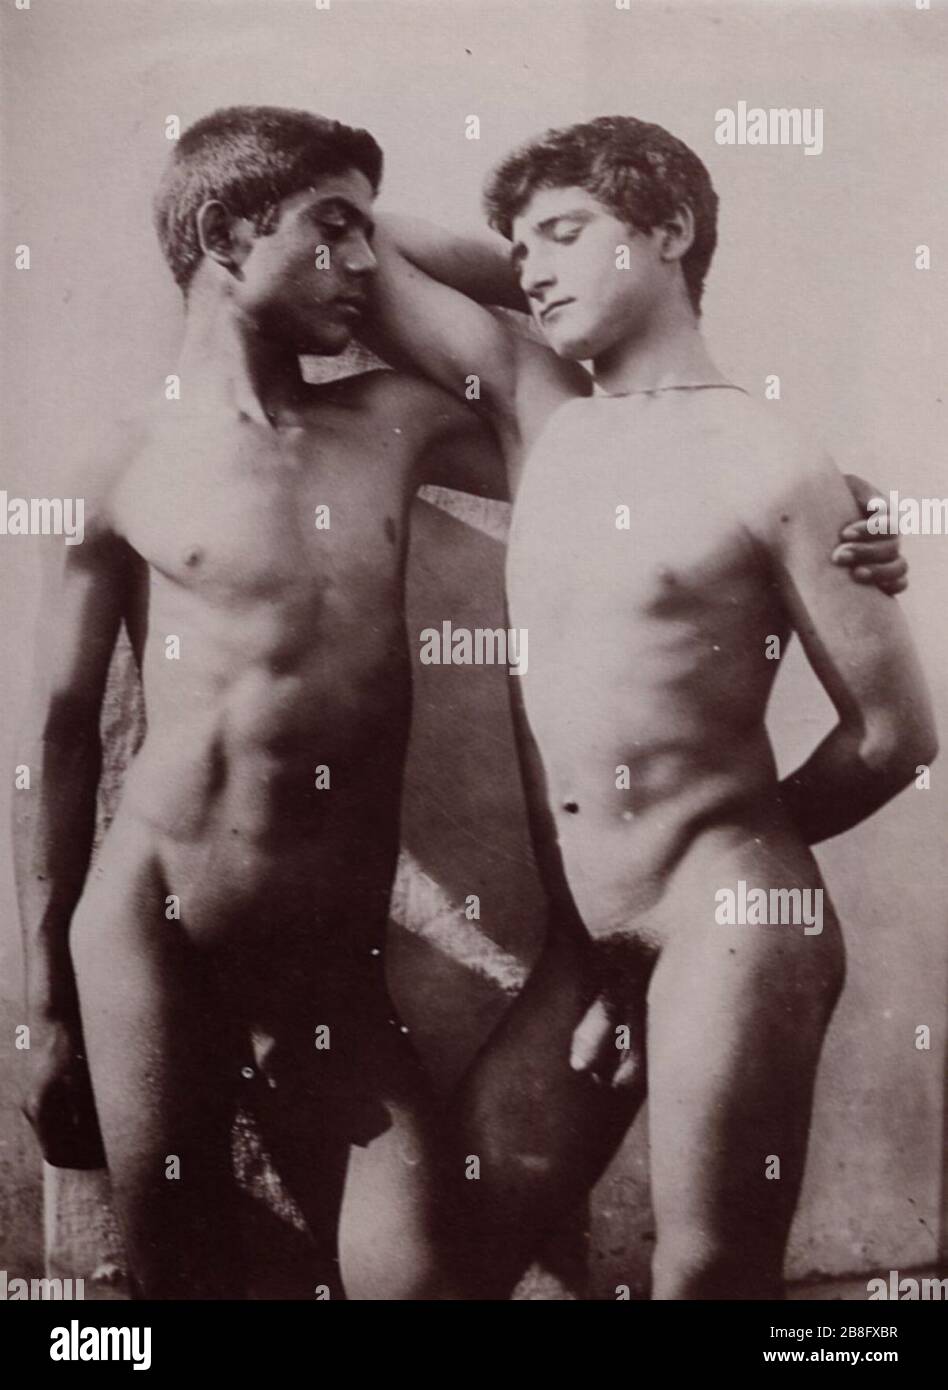 Gloeden, Wilhelm von - Zwei sich vor einer weißen Wand umarmende Freunde Foto Stock